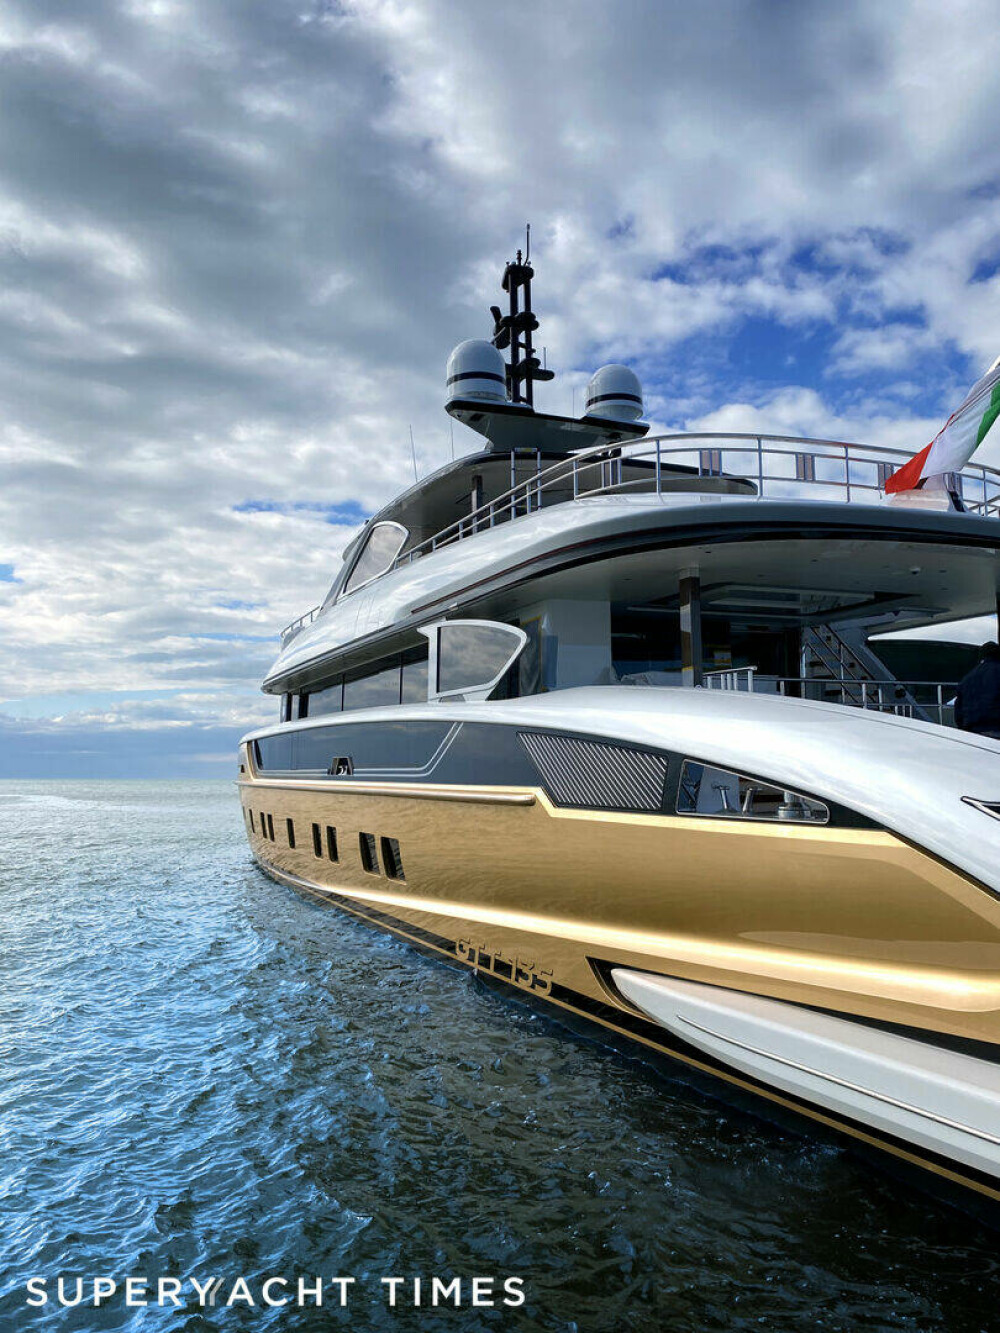 Cum arată yahtul unui miliardar belarus de pe Coasta de Azur, confiscat de francezi. ”Este definiția luxului” GALERIE FOTO - Imaginea 5